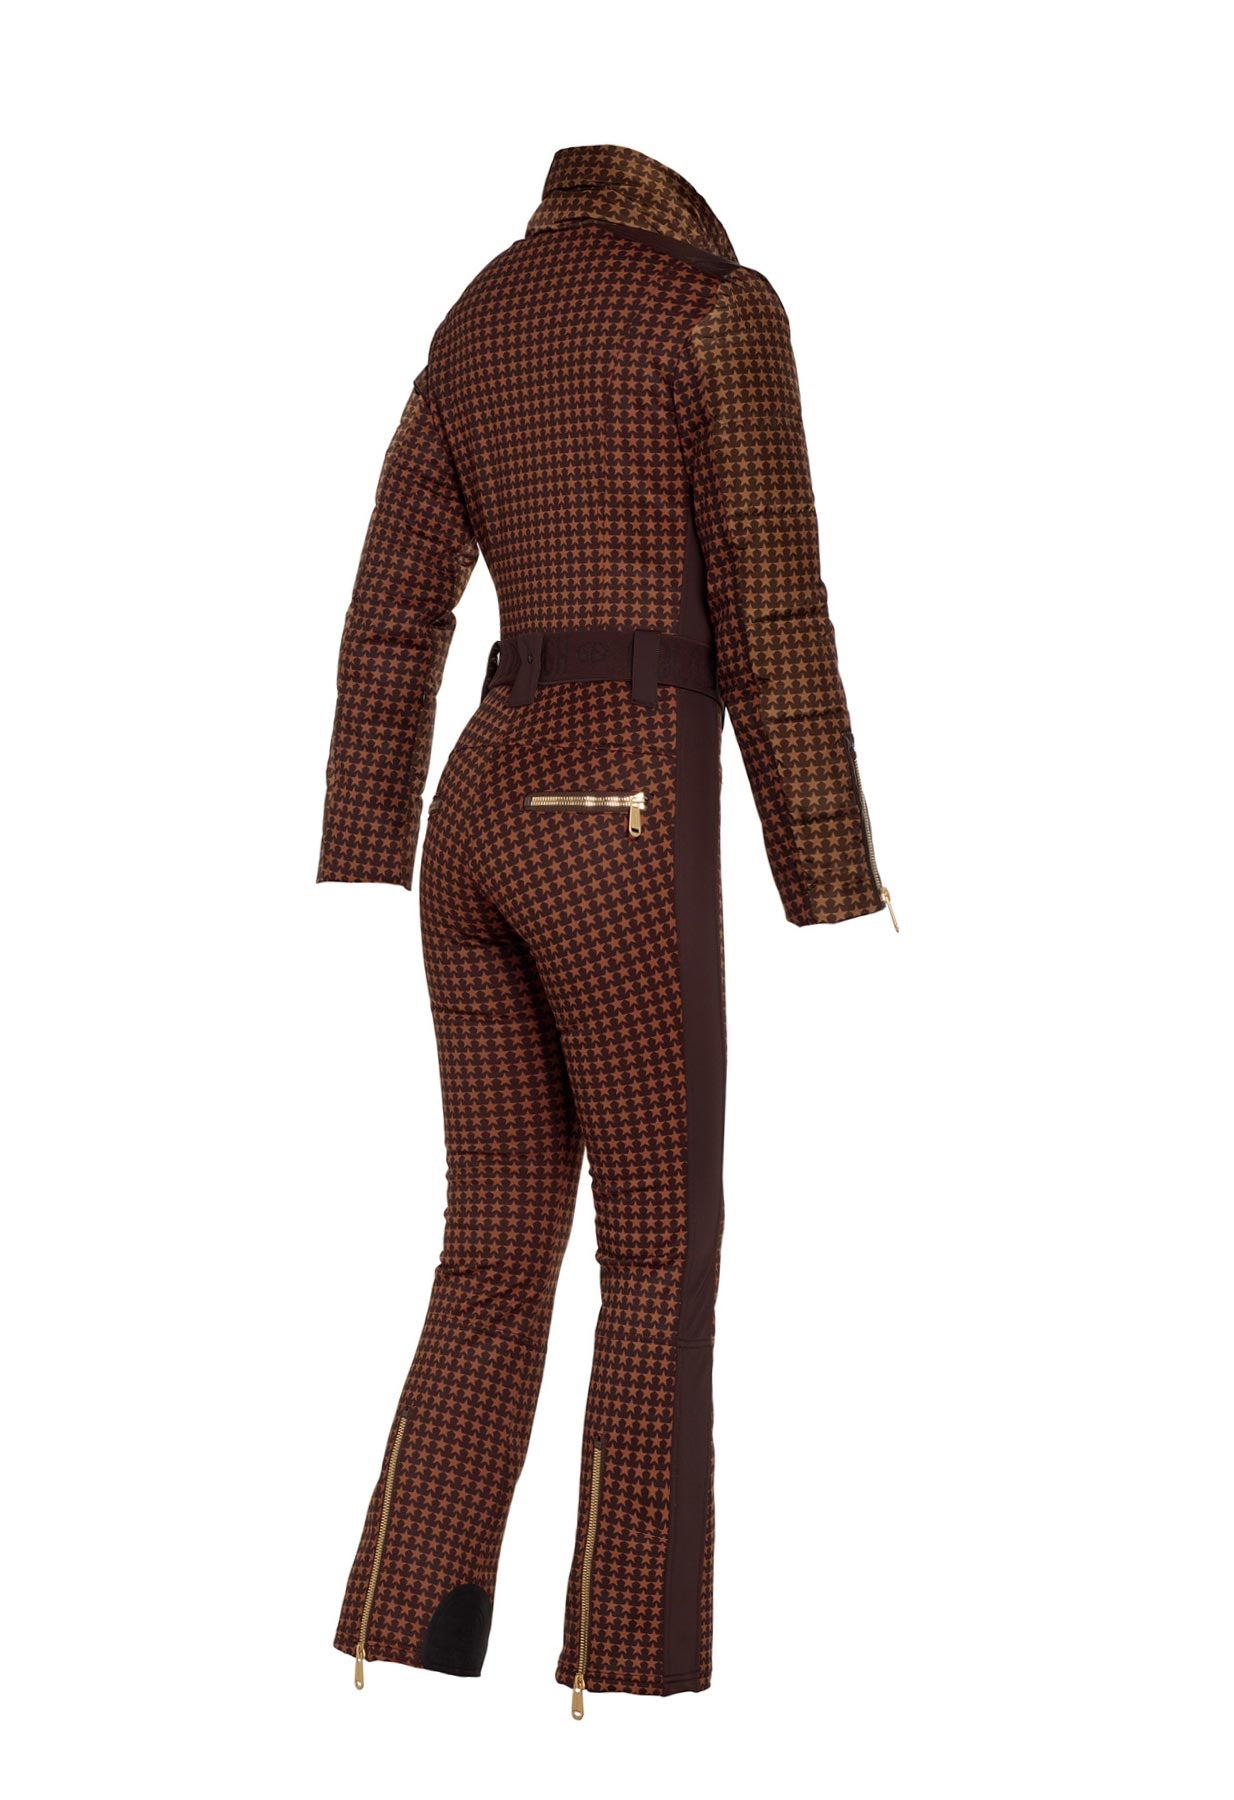 Goldbergh Starstruck One Piece Ski Suit in Brown Star Pattern